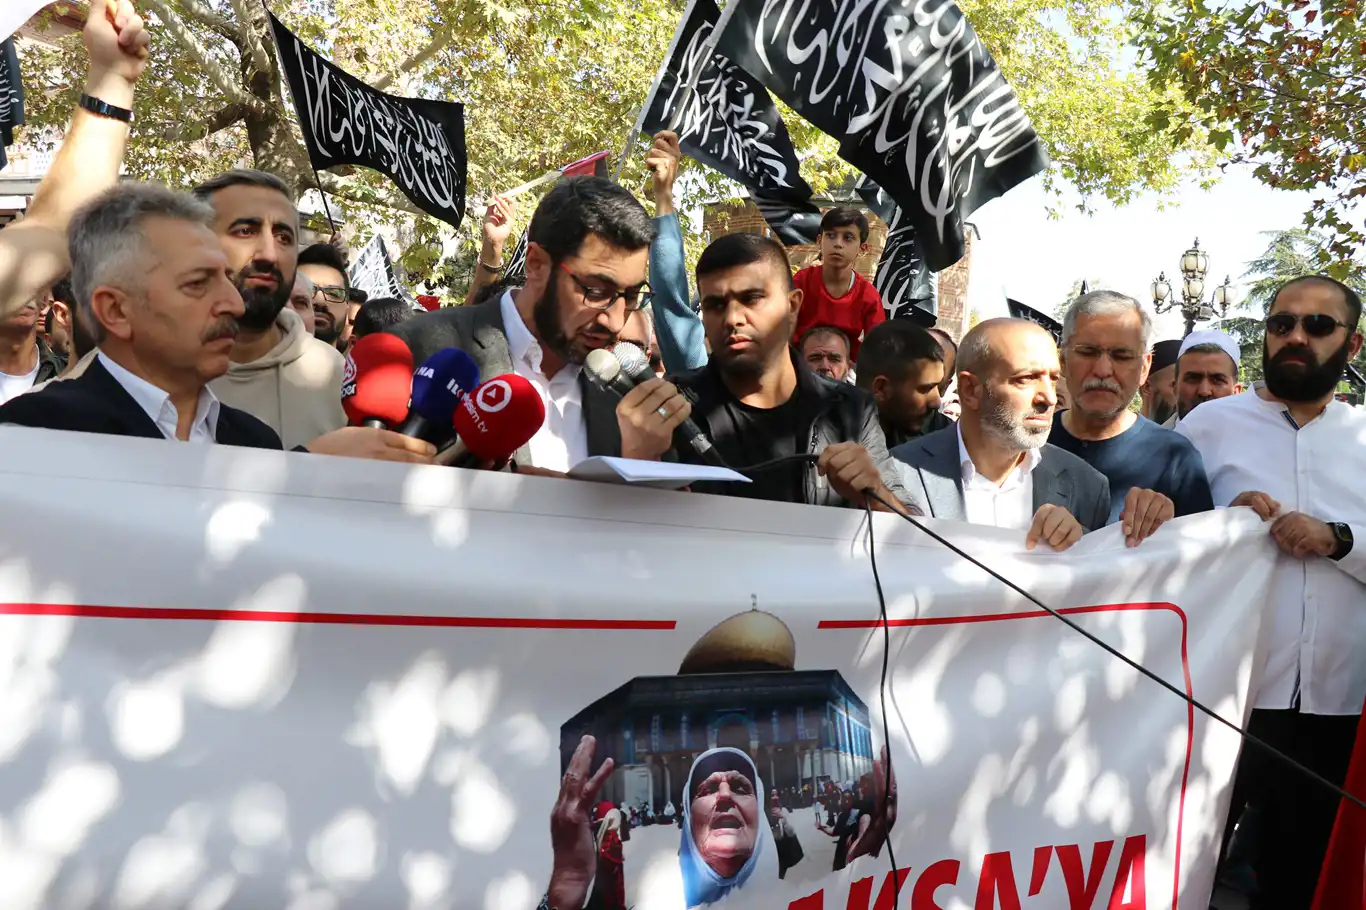 “Şimdi Değilse Ne Zaman? Ordular Aksa’ya” sloganıyla Ankara’da basın açıklaması yapıldı